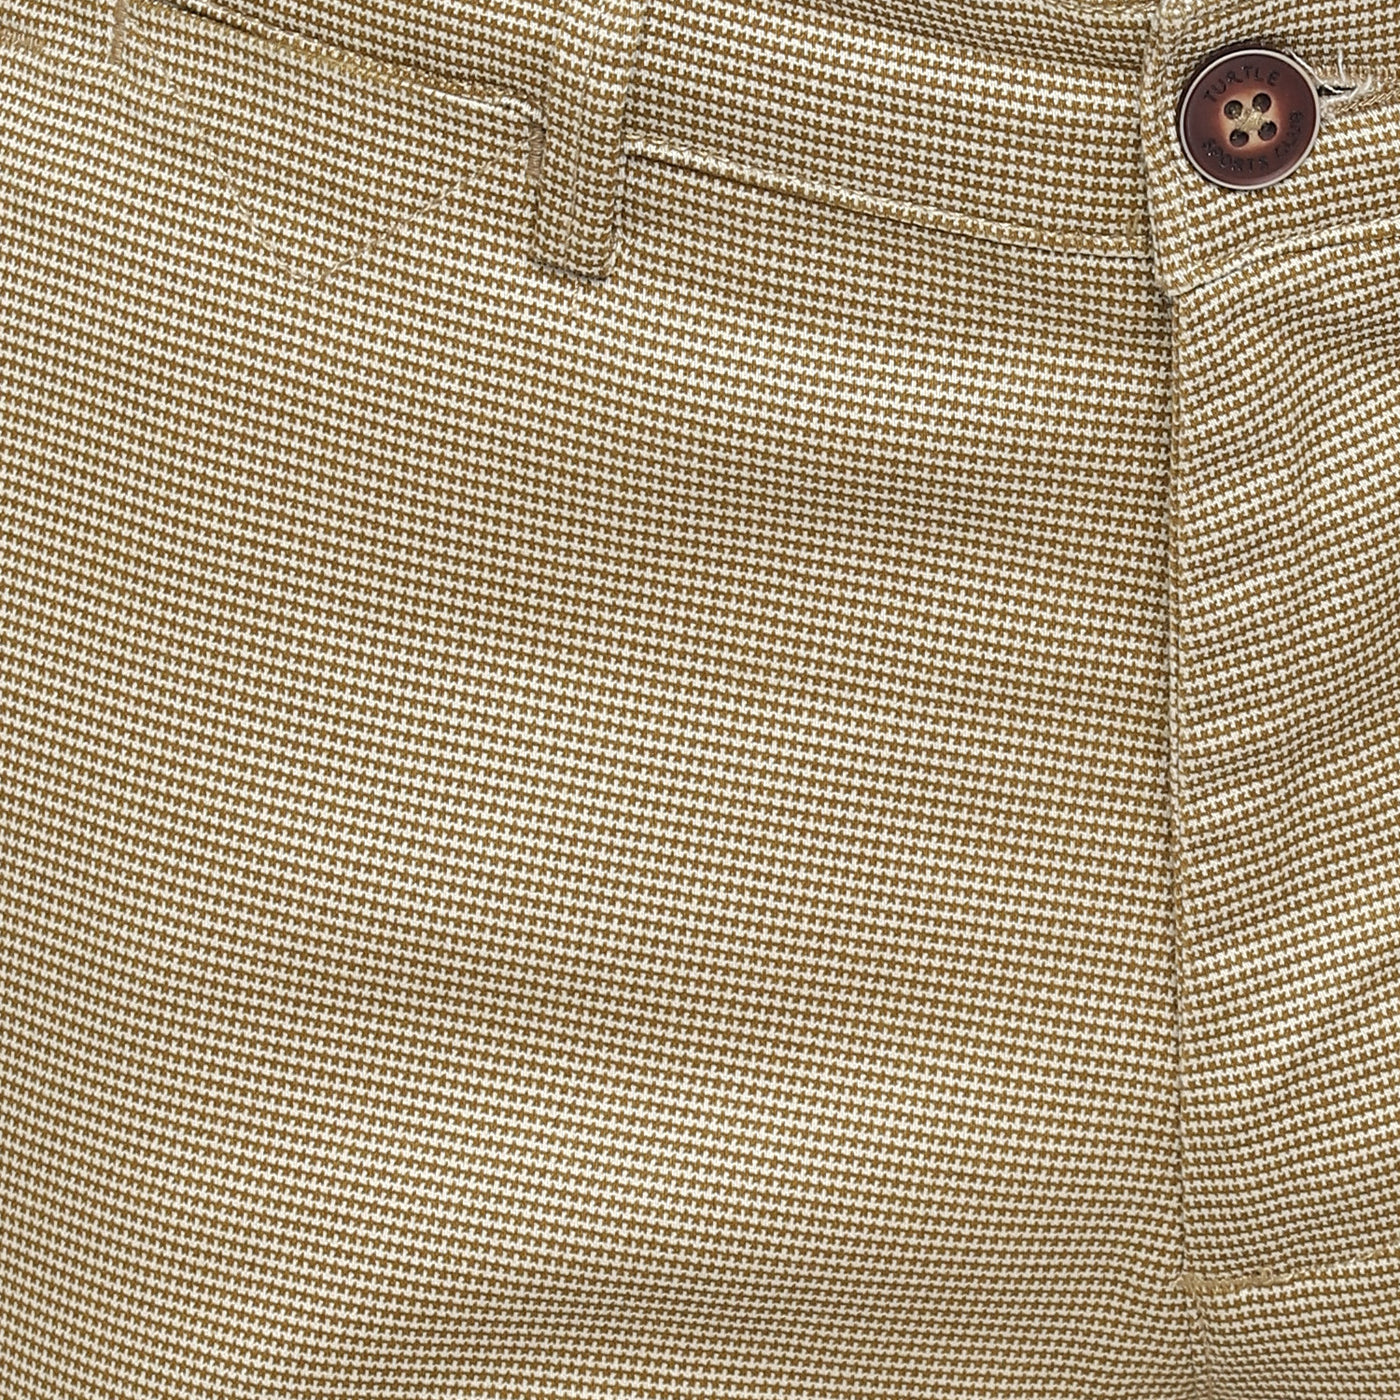 Beige Ultra Slim Fit Self Design Trouser